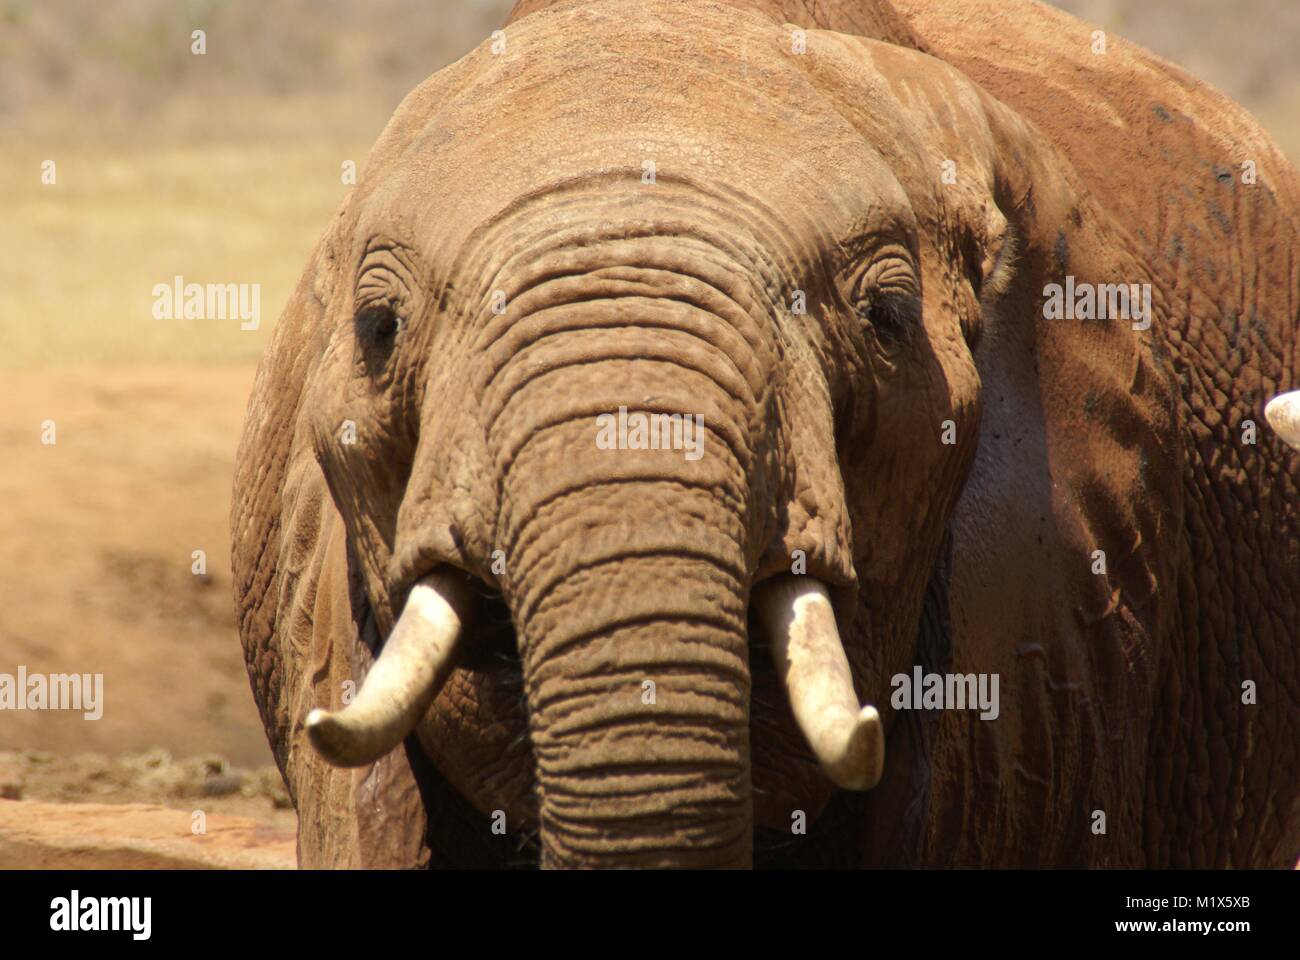 Afrikanischer Elefant (Loxodonta africana) Kenia Safari Wildlife Natur Stockfoto